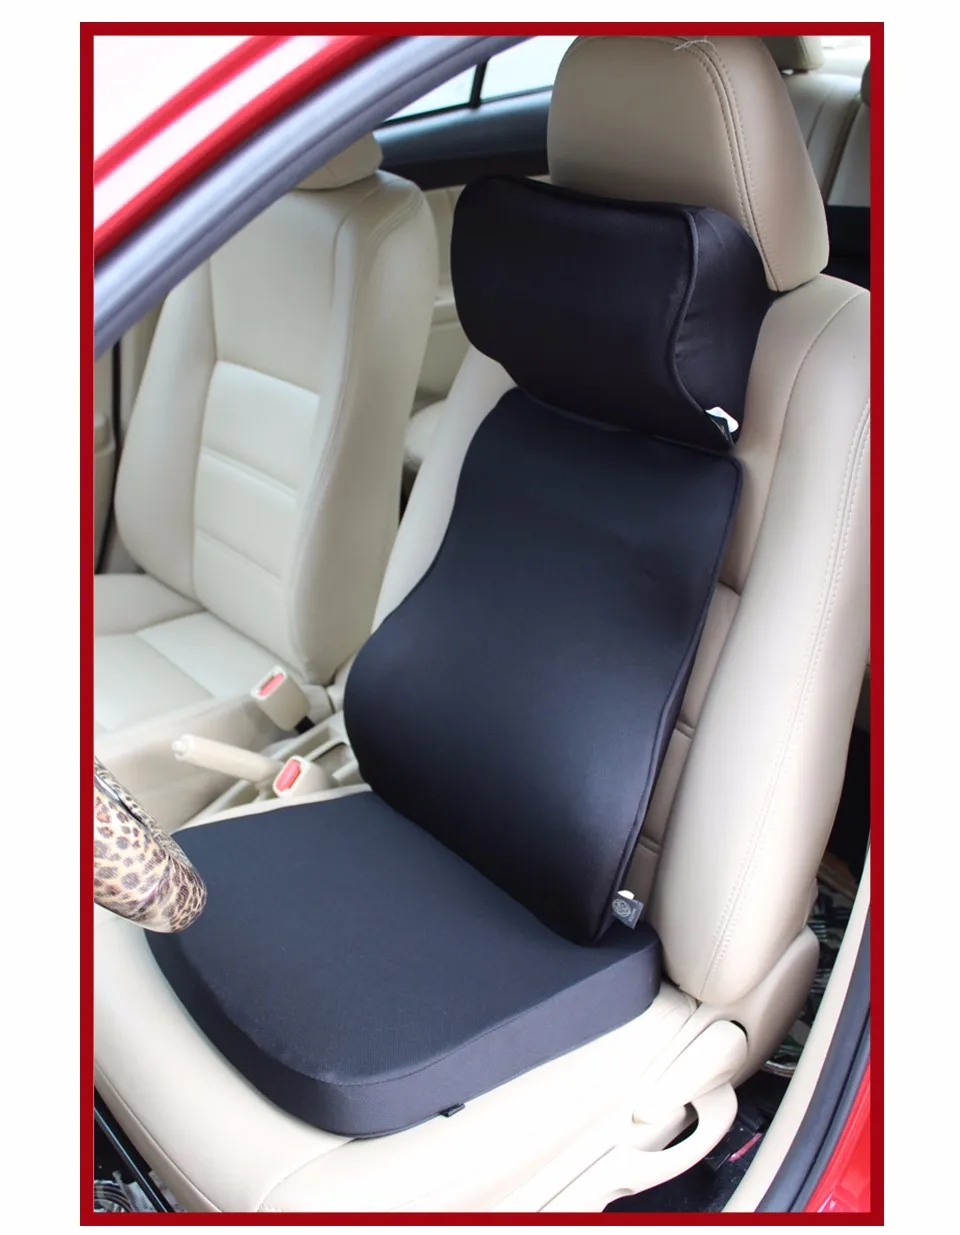 LOEN, супер мягкая Автомобильная подушка, набор, с памятью, пена, автомобильная поясничная поддержка, набор для поясницы и шеи, подушка для сиденья, подушка для вождения, для офиса, дома